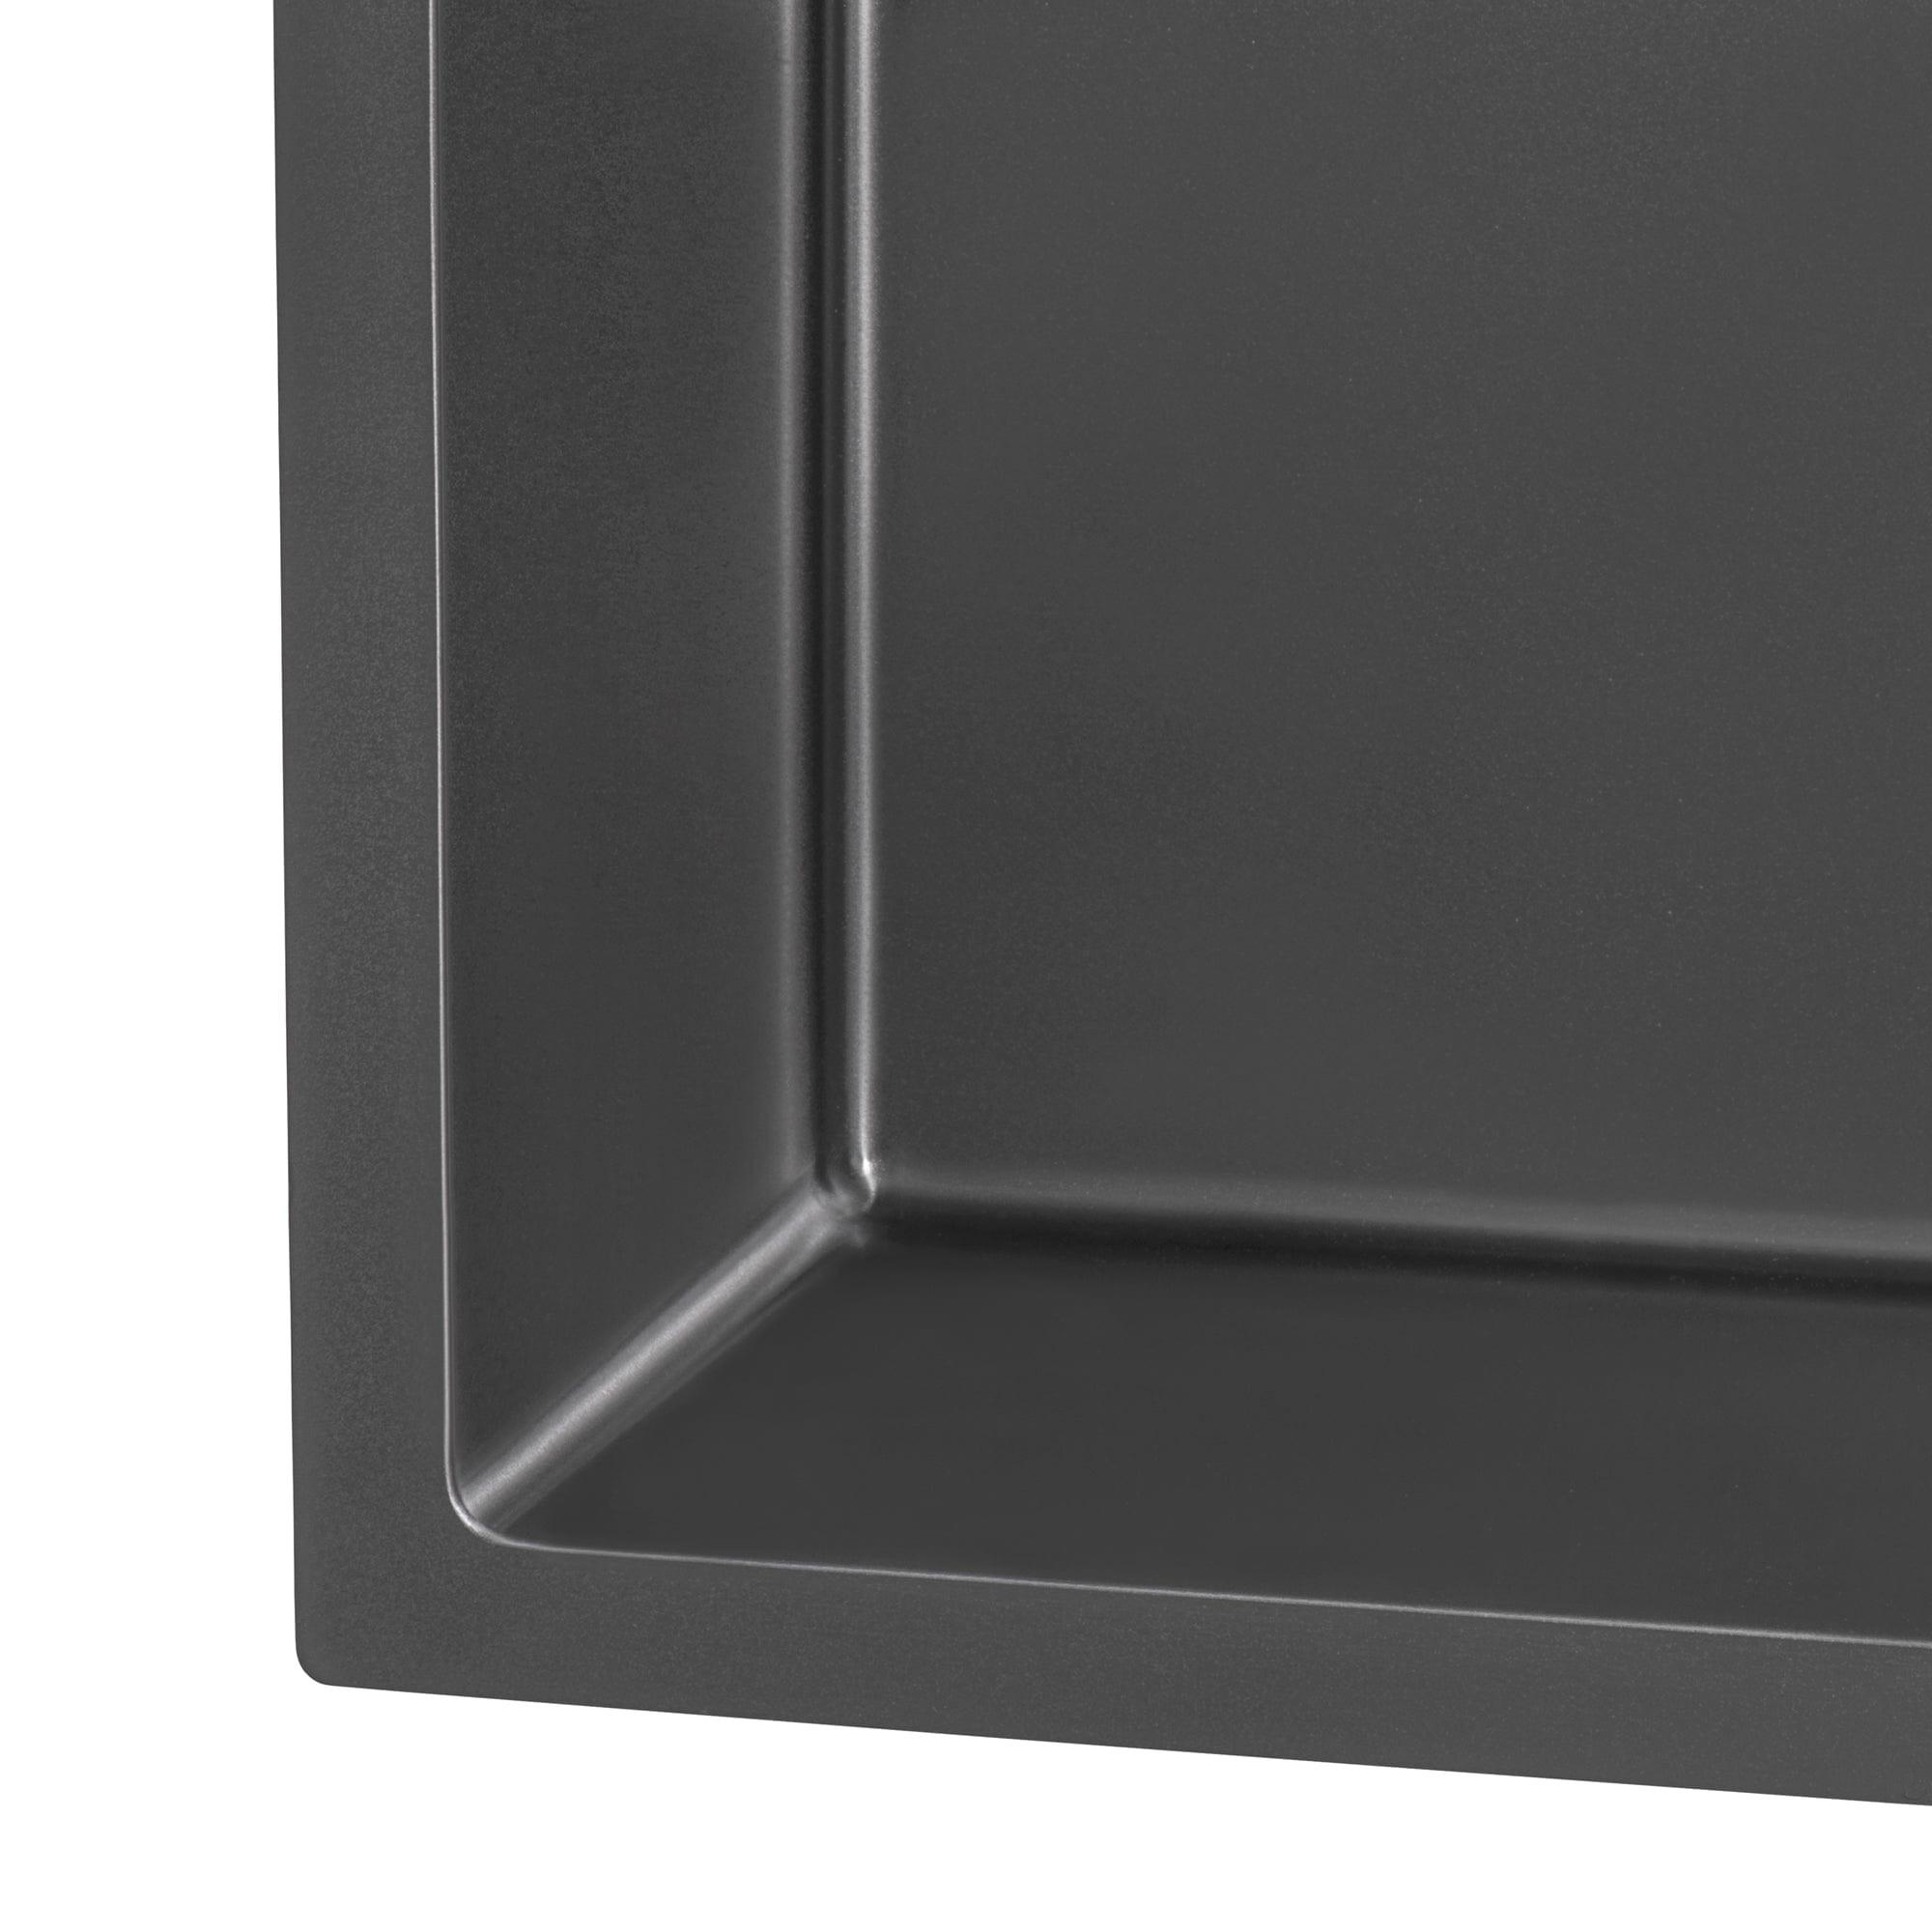 Ruvati Terraza 30" Stainless Steel Kitchen Sink RVH6300BL